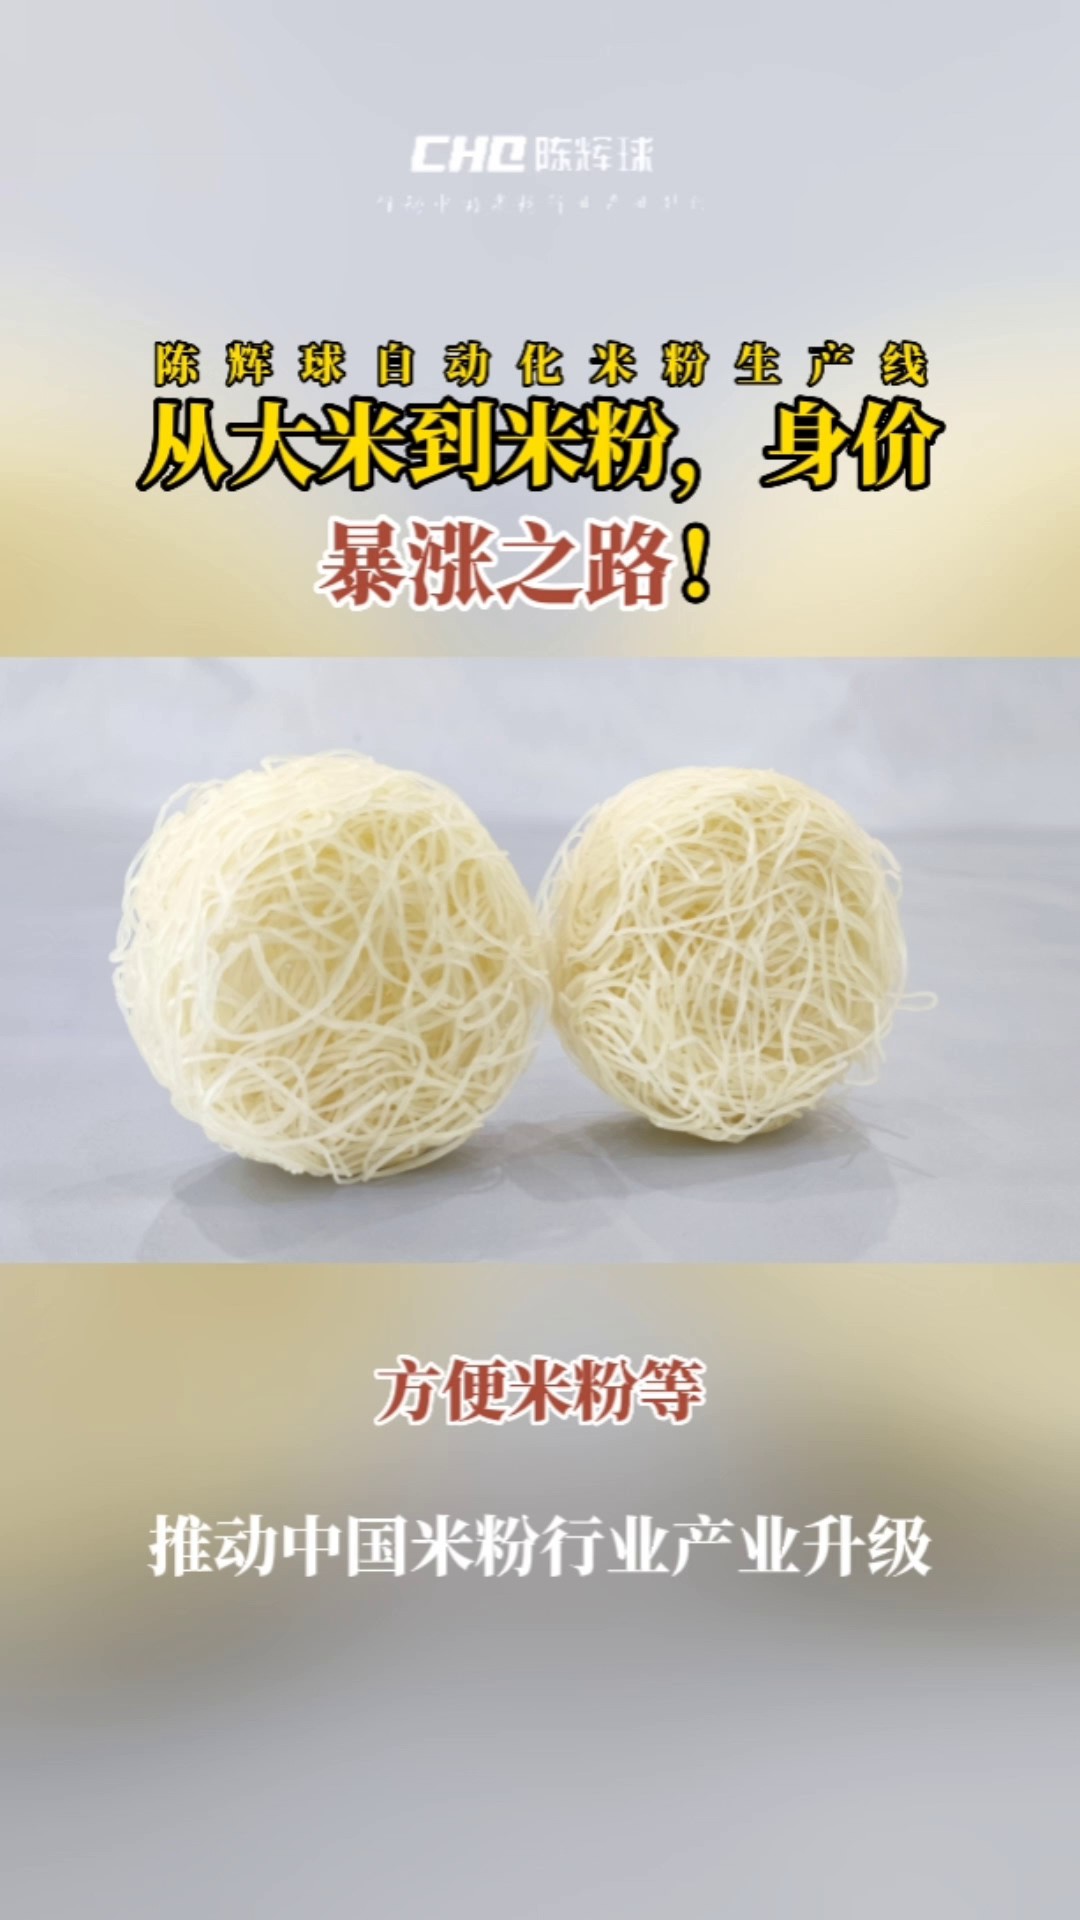 陈辉球品牌米粉设备大小,米粉设备